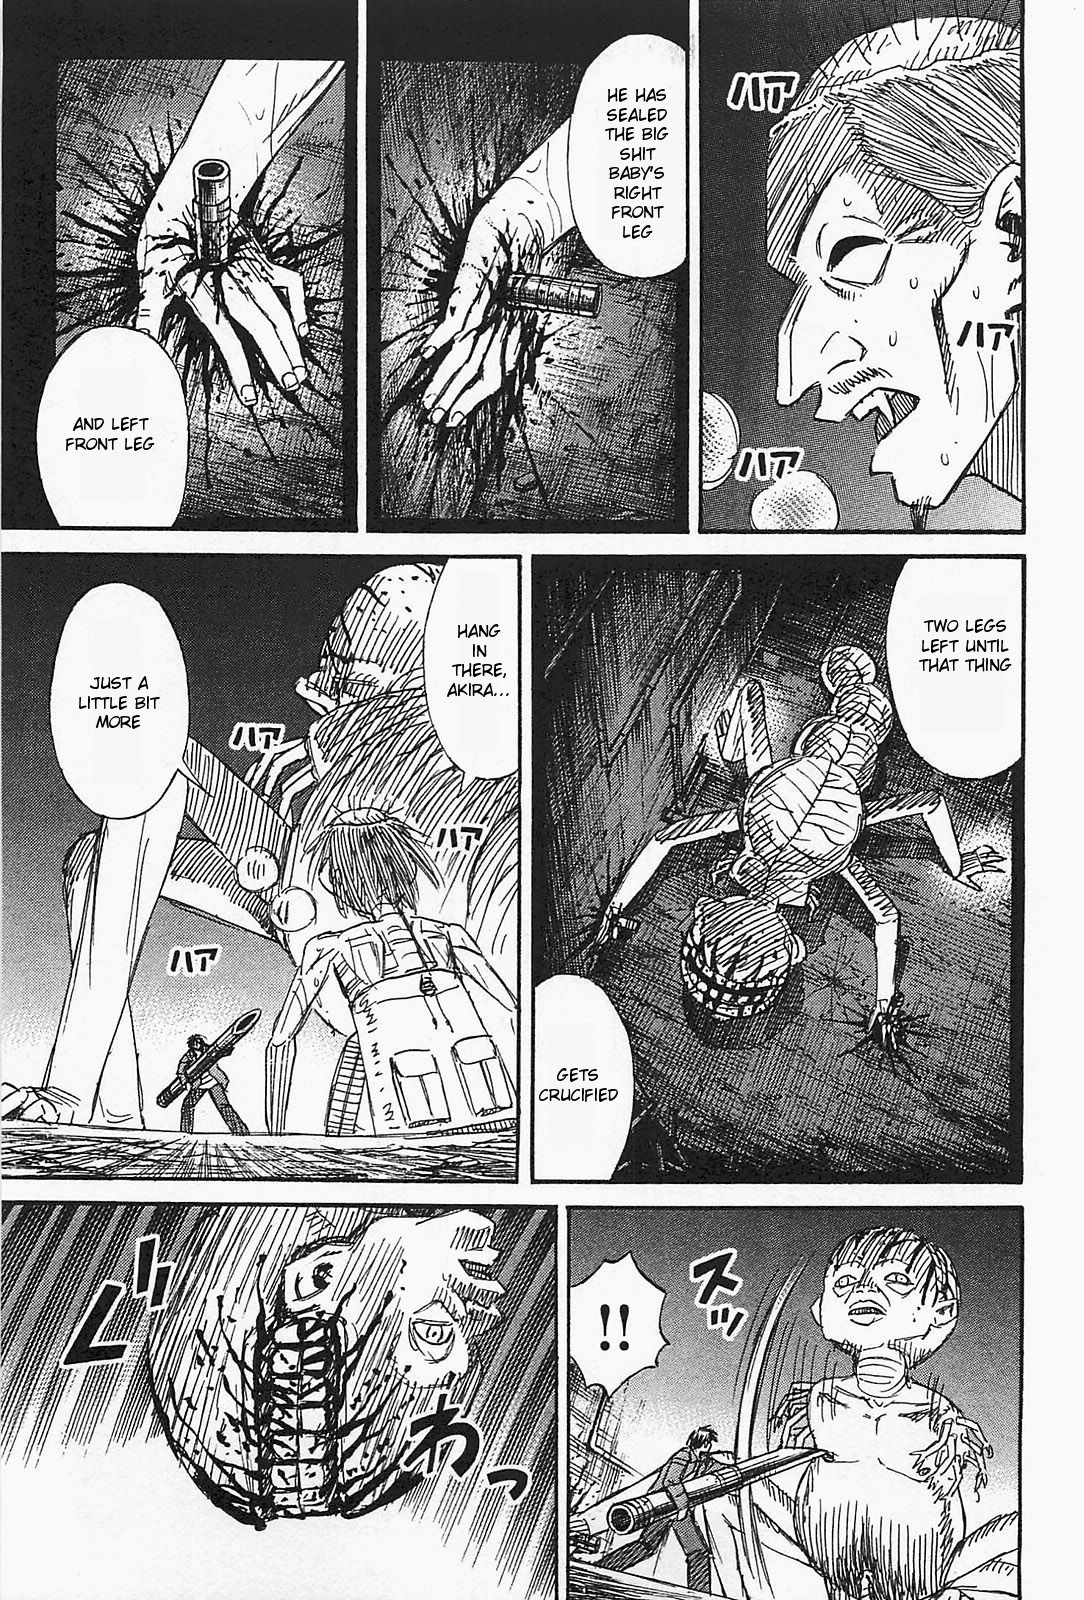 Higanjima - Last 47 Days - Page 3